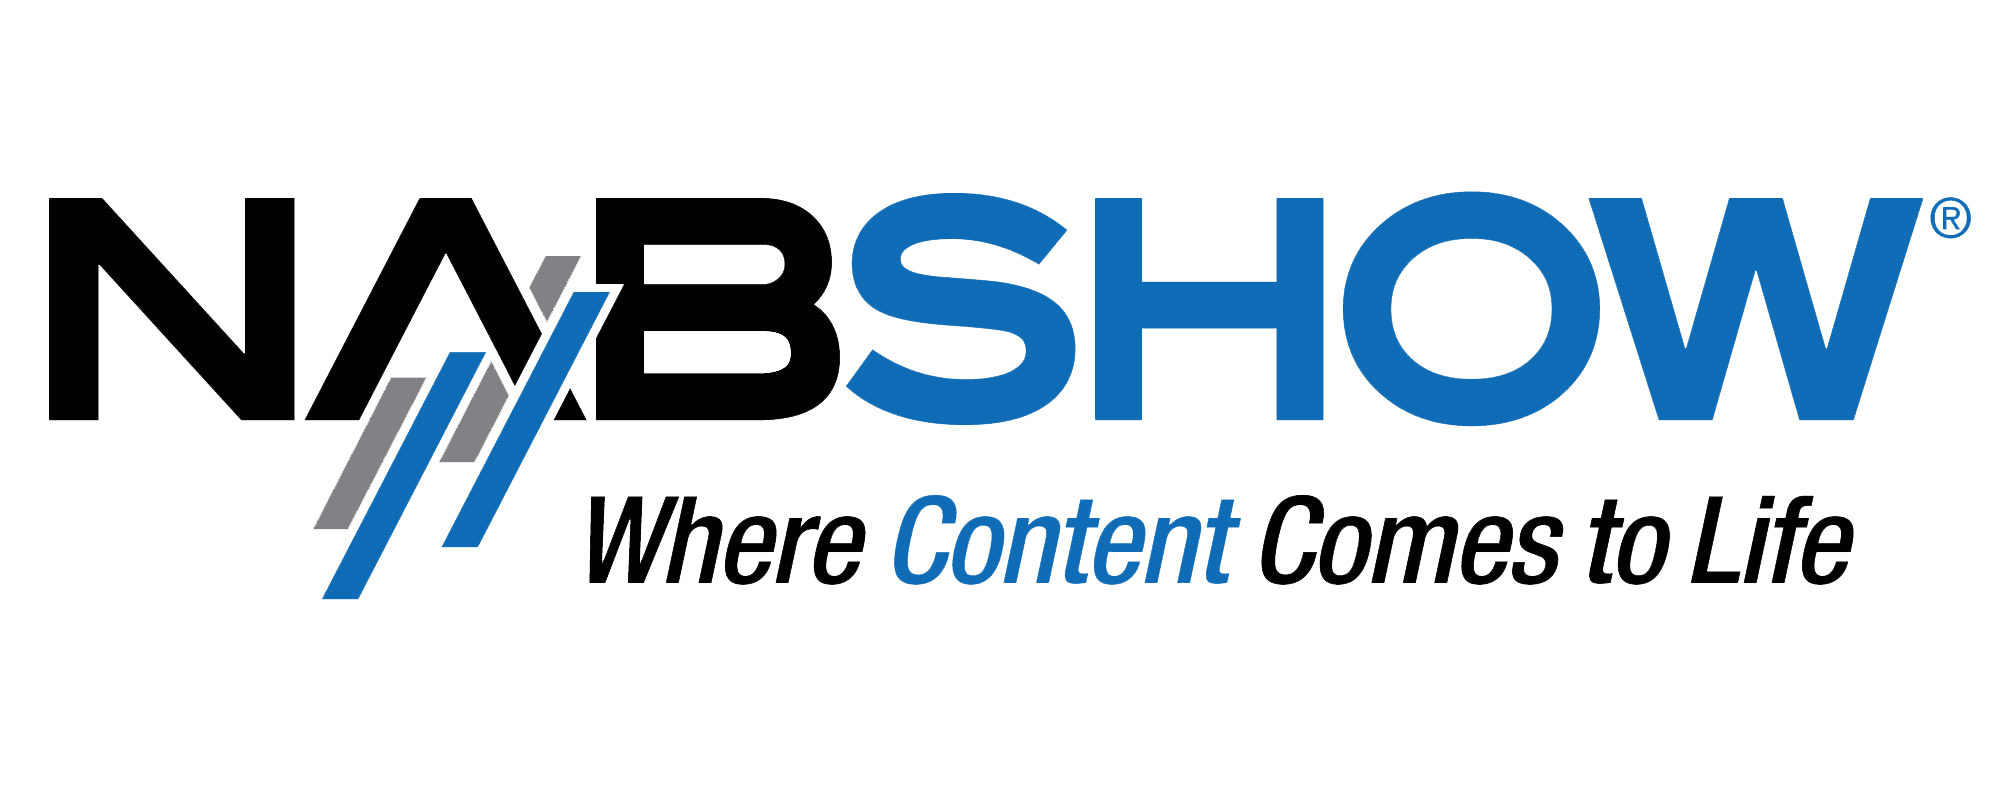 nab show logo transparency 1